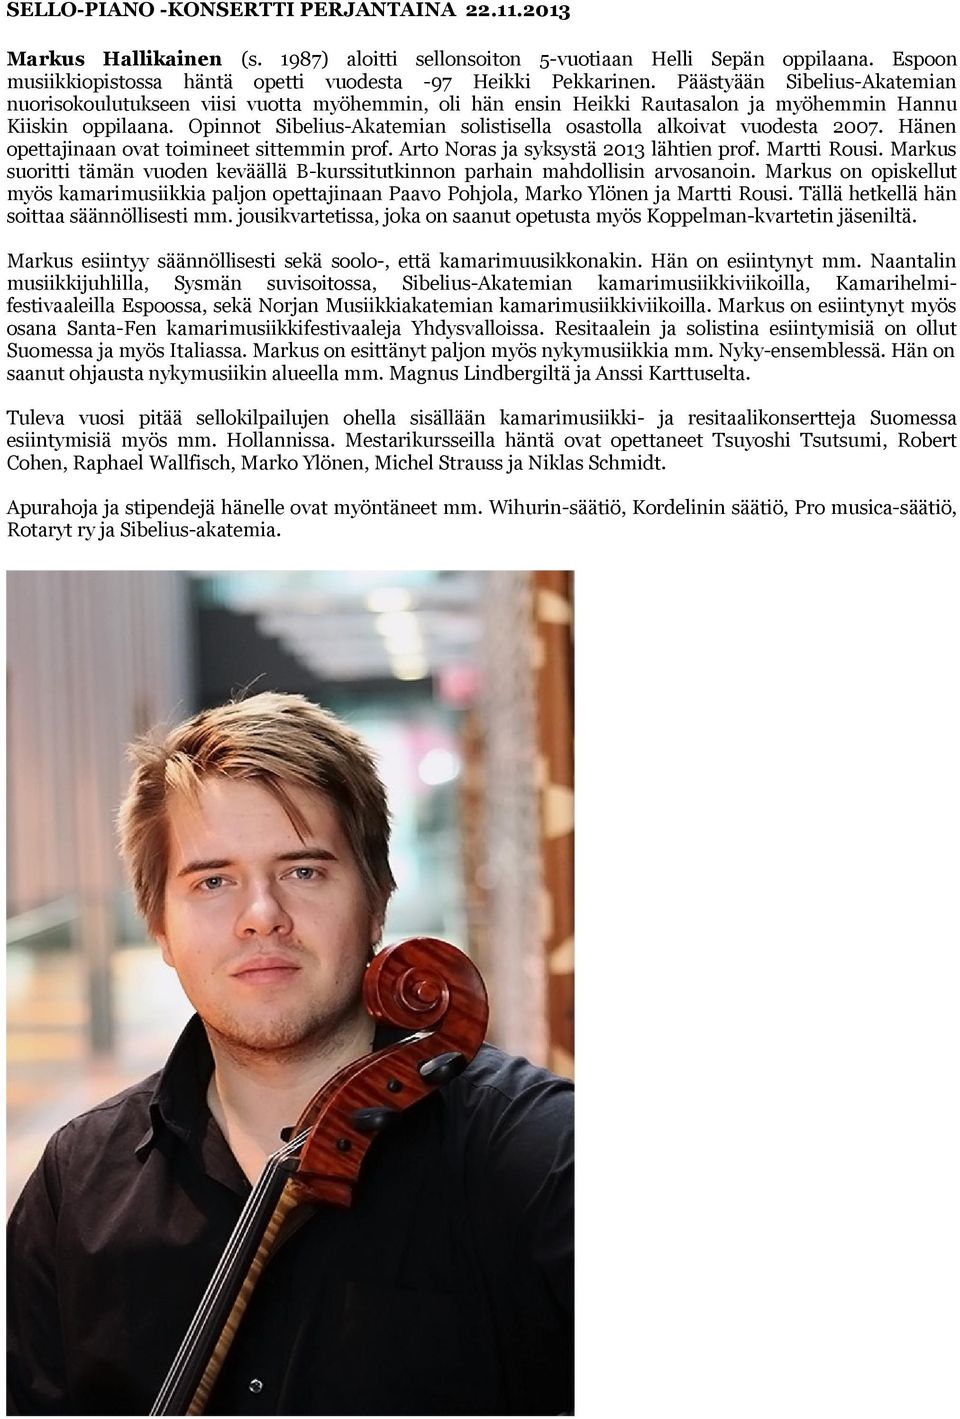 Opinnot Sibelius-Akatemian solistisella osastolla alkoivat vuodesta 2007. Hänen opettajinaan ovat toimineet sittemmin prof. Arto Noras ja syksystä 2013 lähtien prof. Martti Rousi.